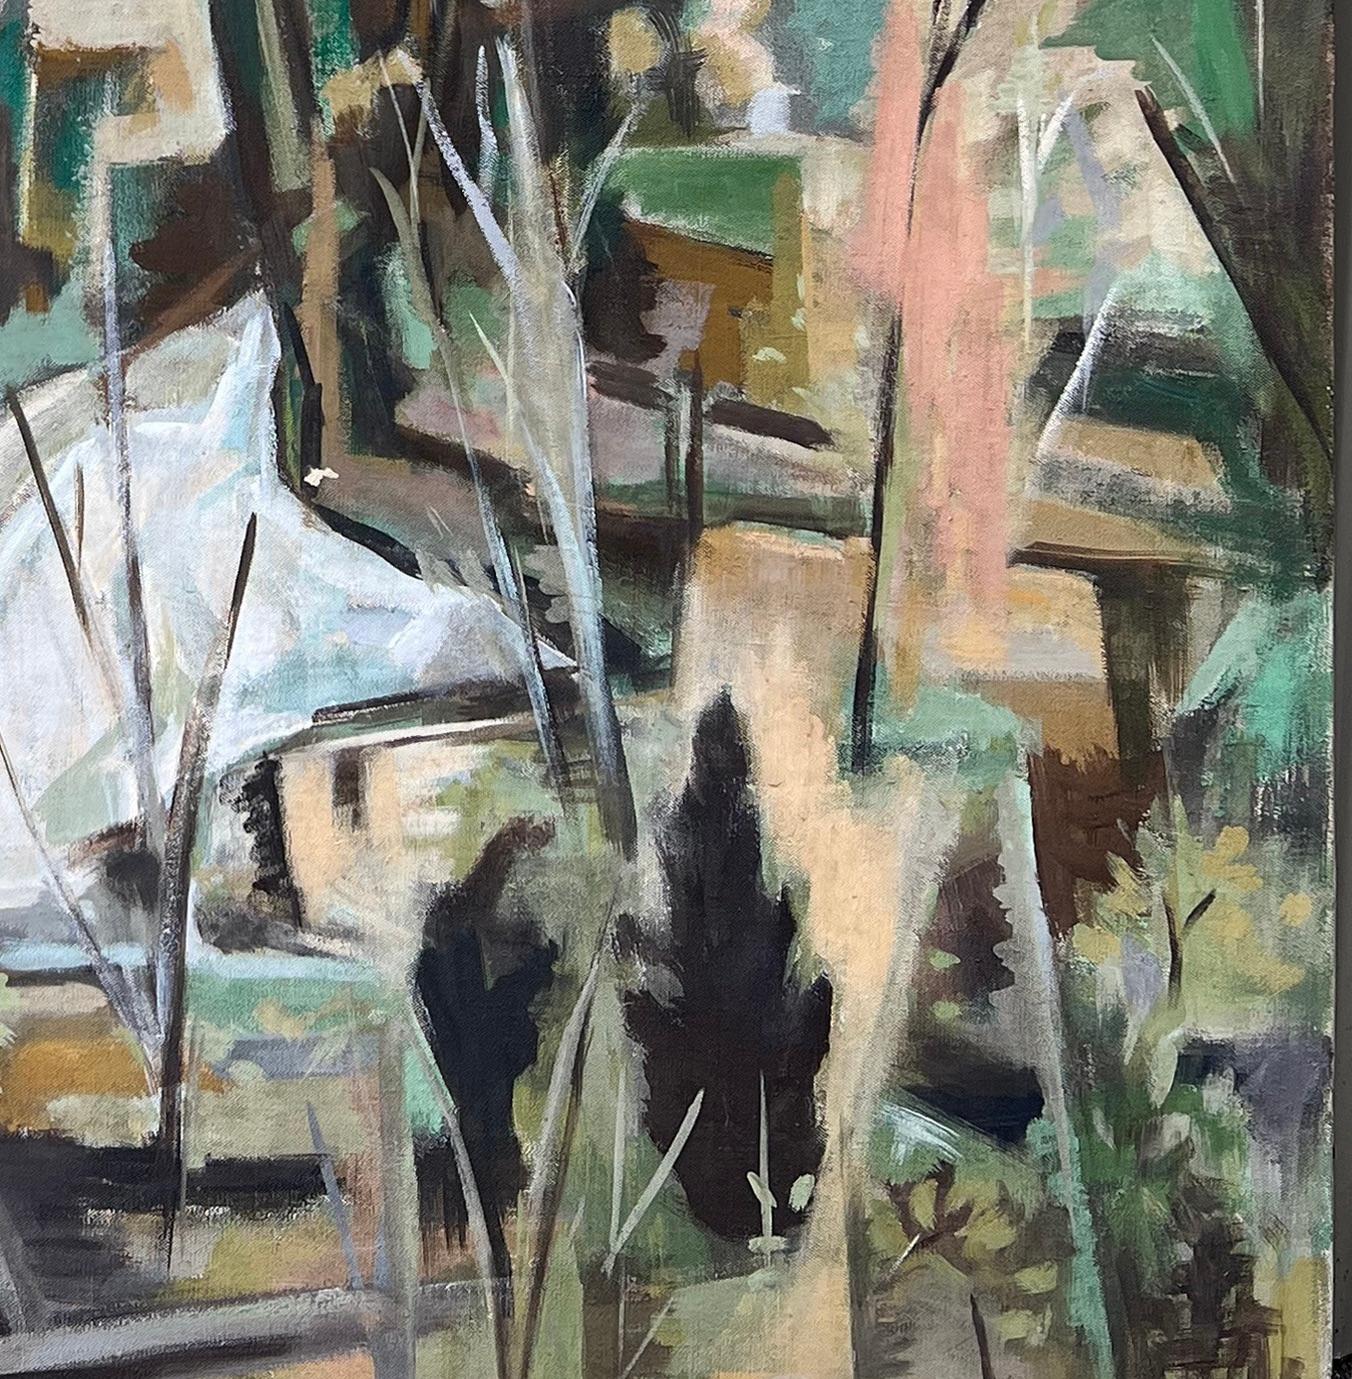 Aquarell-Wasserfall Bearsville NY Landschaft Sozialrealismus Mitte des 20. Jahrhunderts Moderner Kubismus – Painting von Georgina Klitgaard